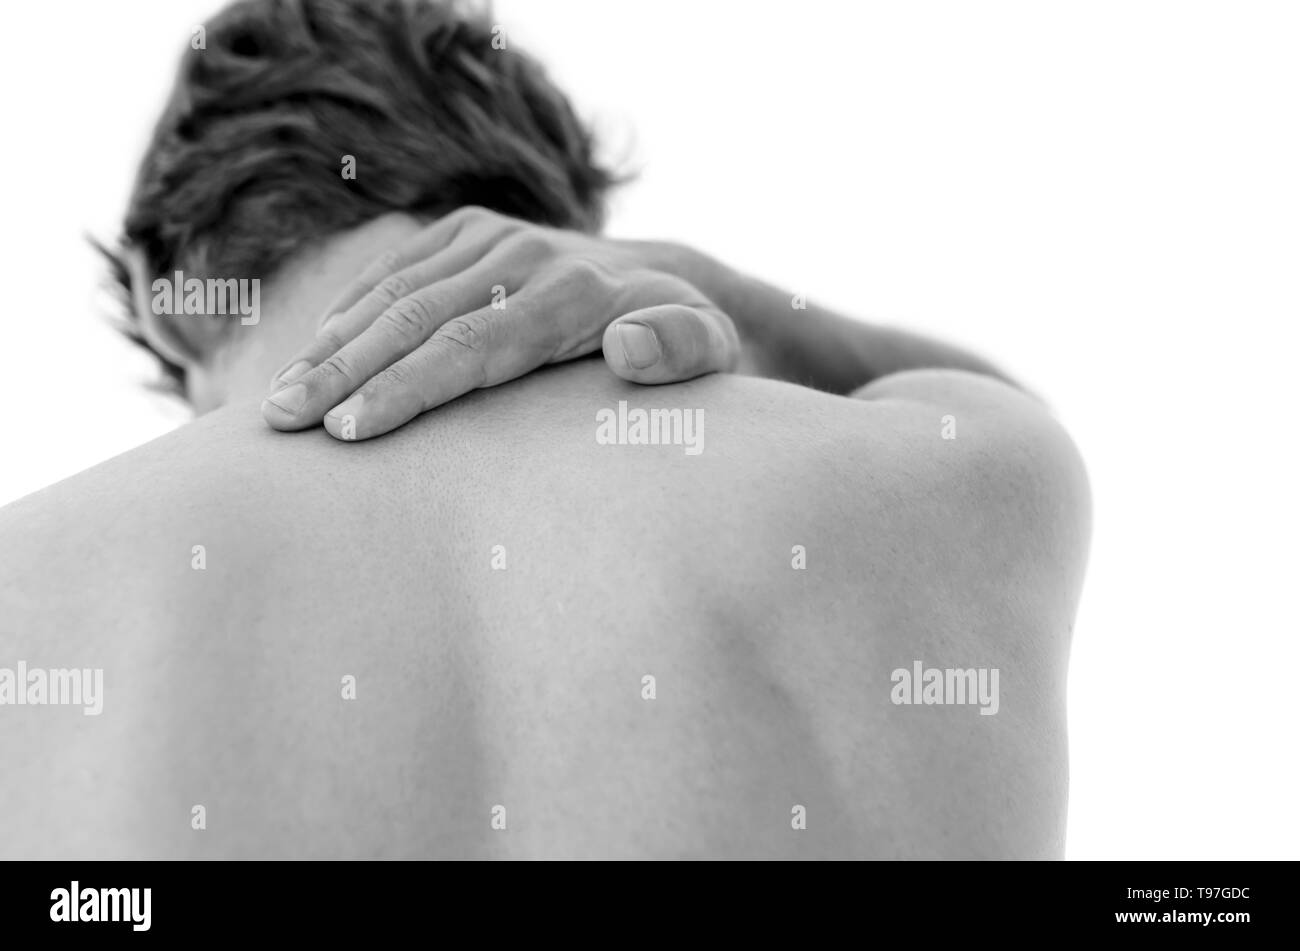 Dettaglio di un uomo che soffre di dolori al collo. Isolato su sfondo bianco. Foto Stock